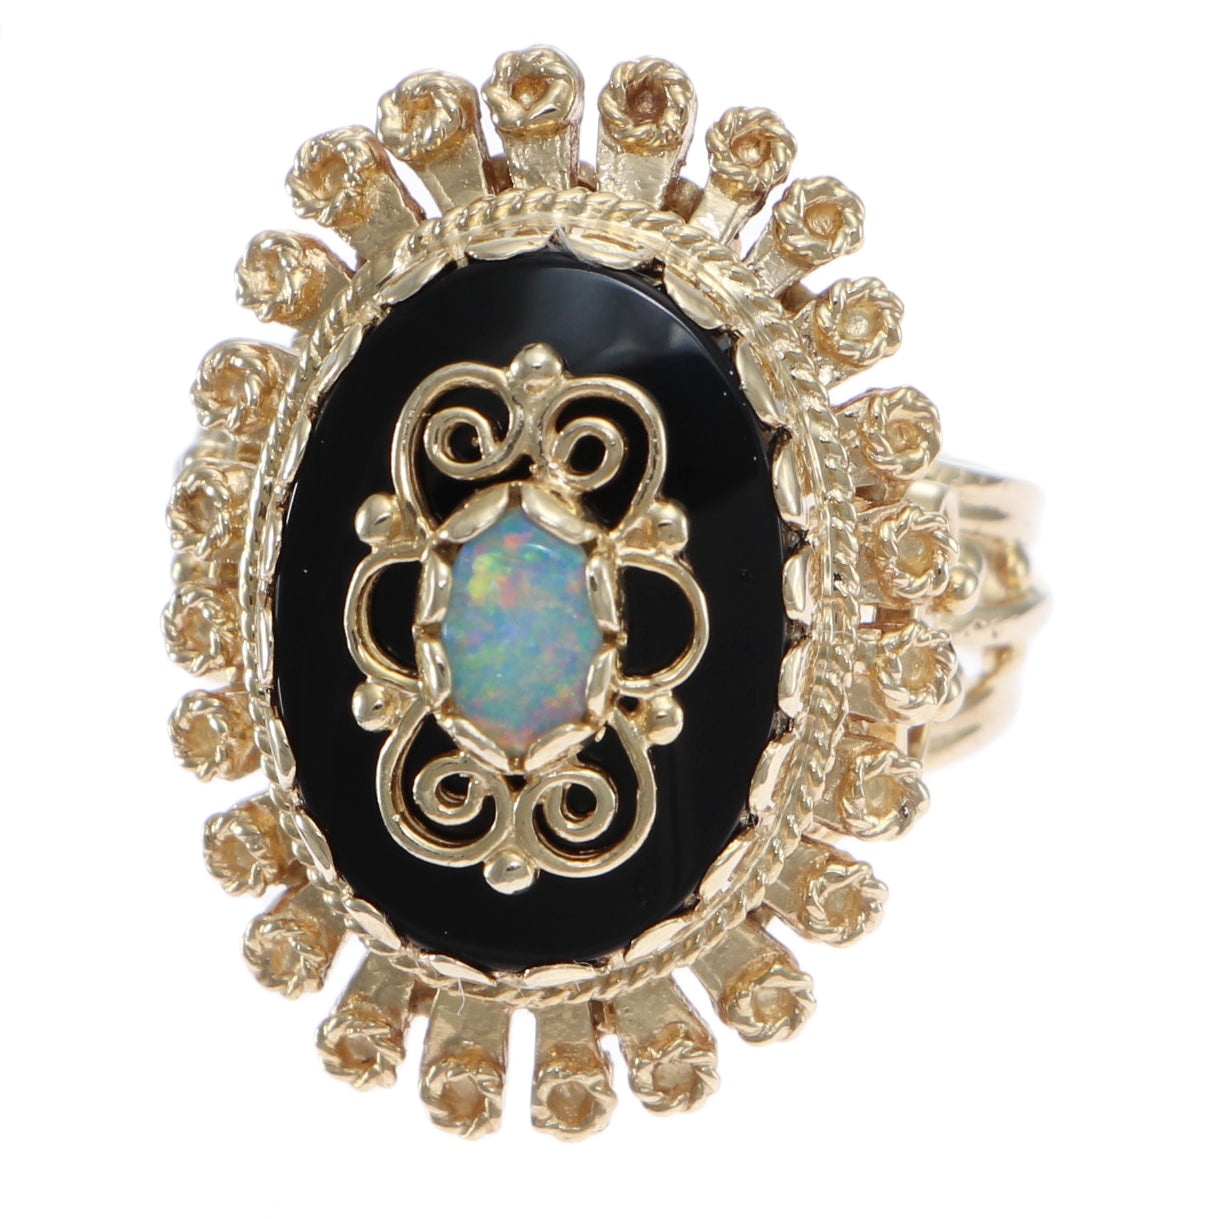 Ever Blossom Bracelet, Yellow Gold, Onyx & Diamonds - Jewelry - Categories